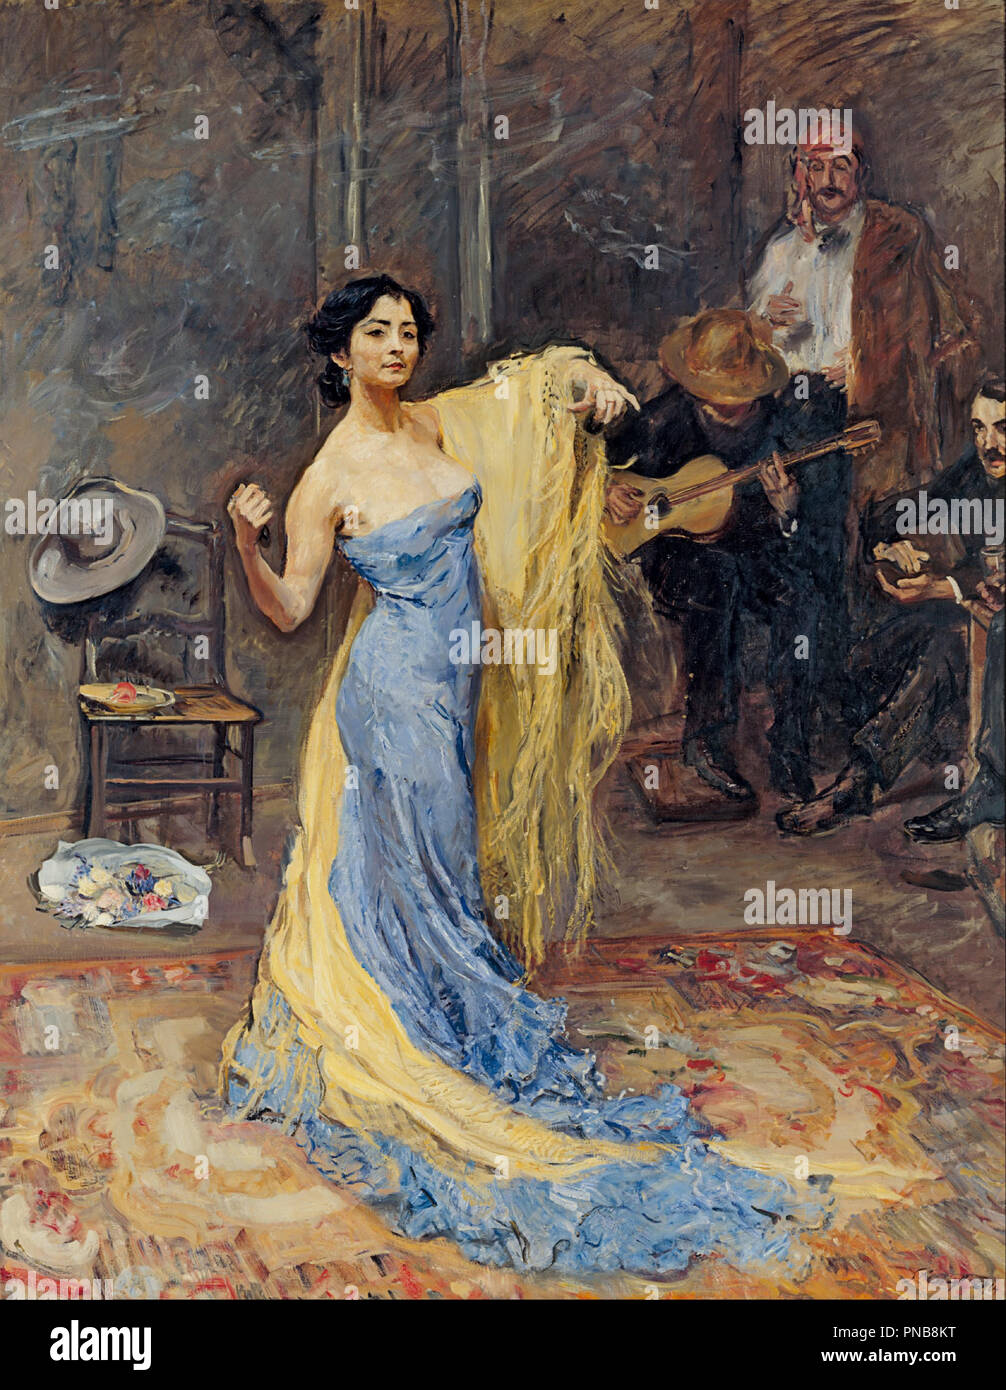 Portrait de la danseuse Marietta di Rigardo. Date/période : 1904. La peinture. Hauteur : 2 290 mm (90.15 in) ; largeur : 1 800 mm (70.86 in). Auteur : Max Slevogt. SLEVOGT, MAX. Banque D'Images